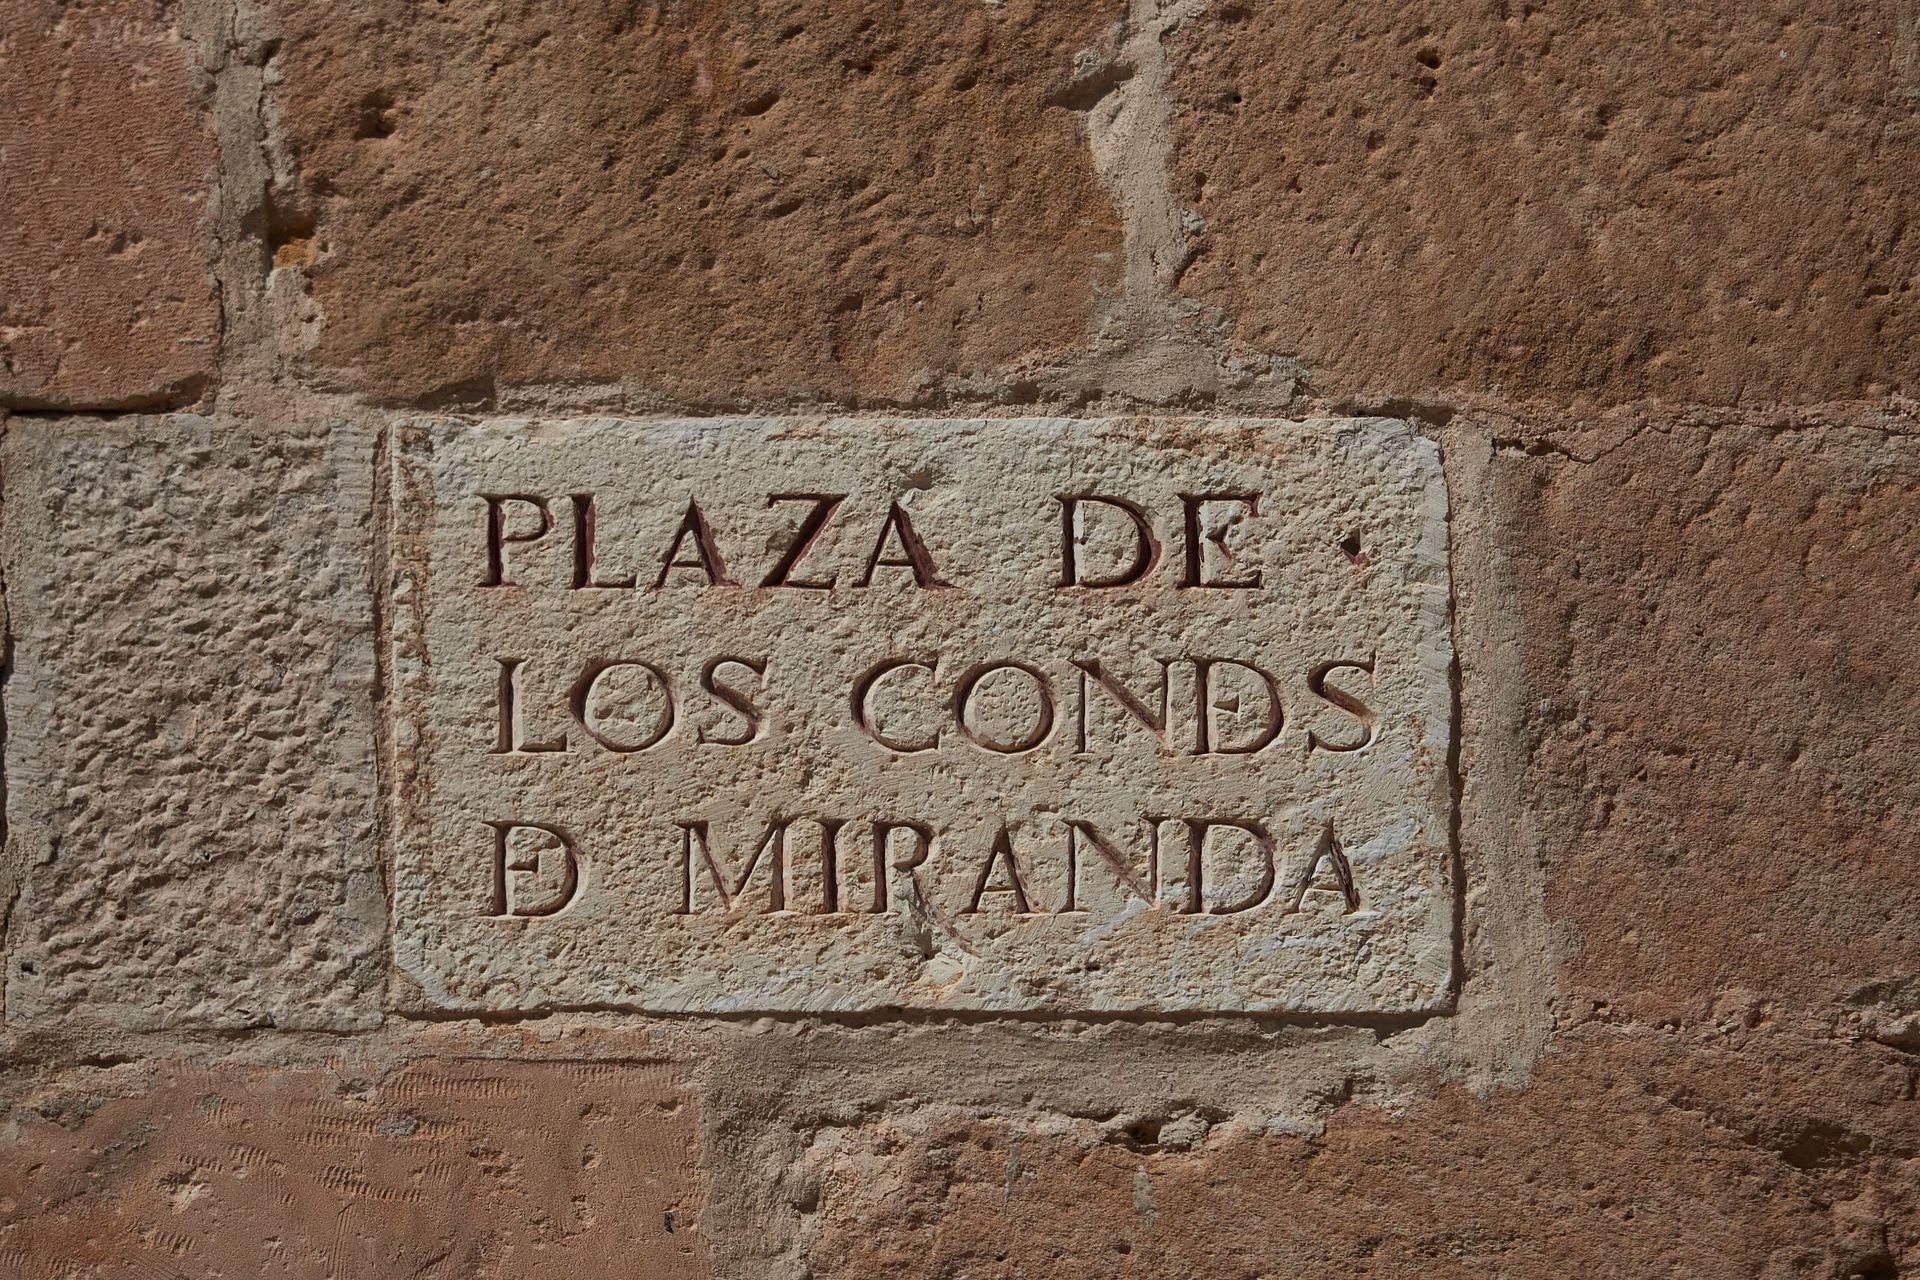 Plaza de los Condes de Miranda